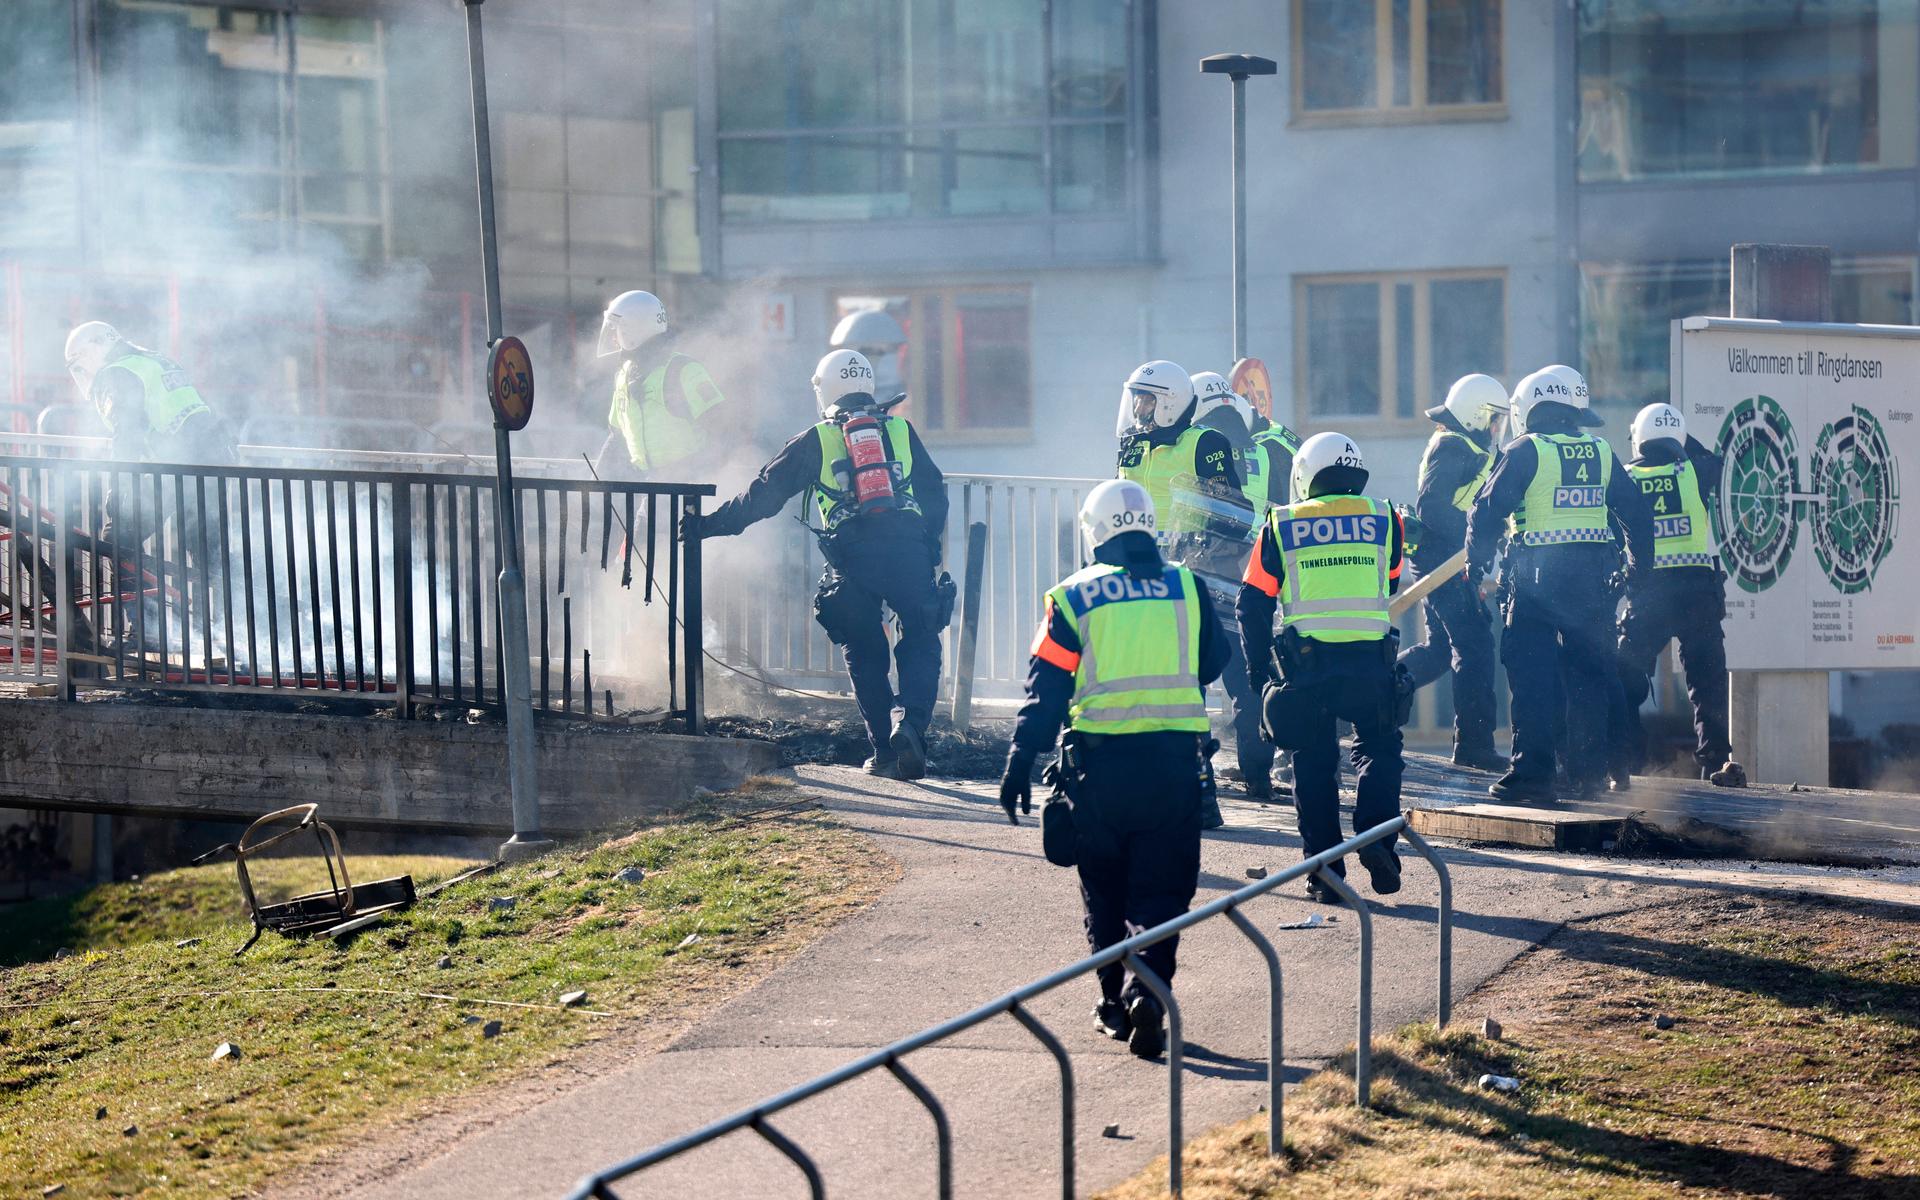 Kravallutrustad polis tar sig förbi en barikad vid Ringdansen centrum under upploppen i Navestad i Norrköping på påskdagen.Oroligheterna utlöstes av att den högerextrema provokatören Rasmus Paludan har sagt att han ska återvända till Östergötland för nya demonstrationer under dagen.